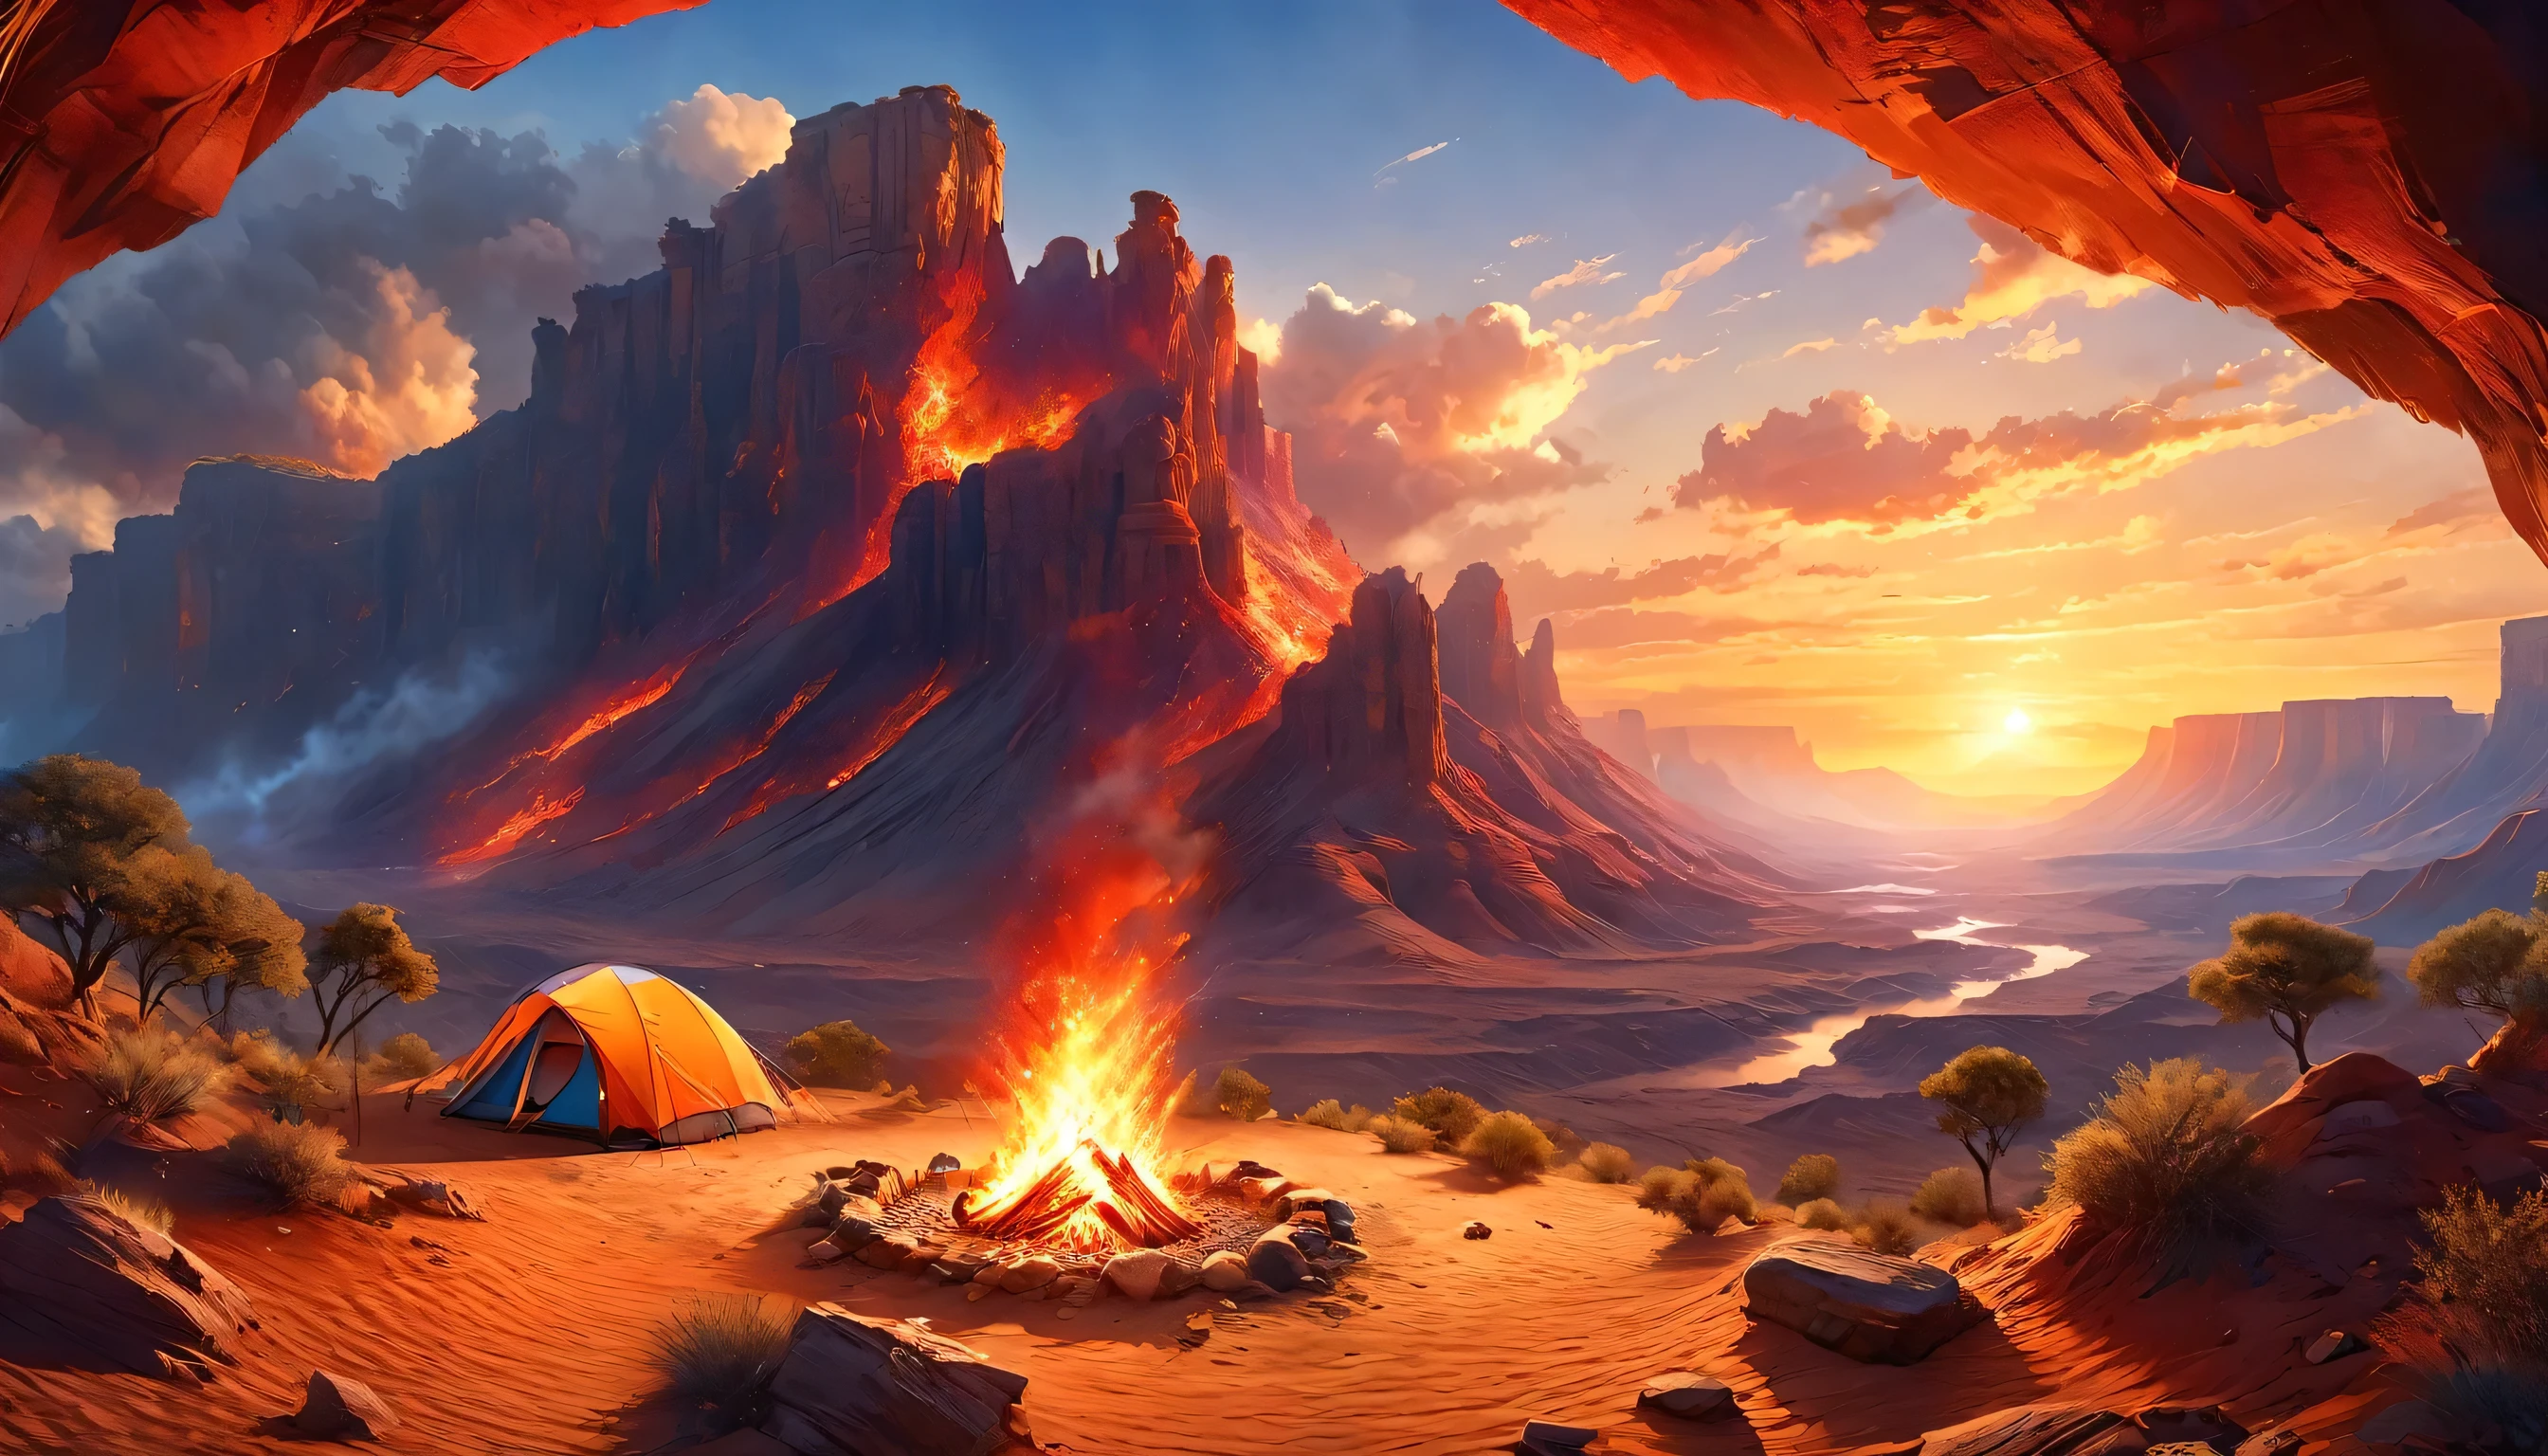 arafed, uma foto de um acampamento (tent: 1.2) e pequeno (fogueira: 1,2), no topo de uma montanha deserta, seu pôr do sol o céu está em vários tons de  (vermelho: 1.1), (laranja: 1.1), (Azul: 1.1) (roxo:1.1) há fumaça subindo do acampamento de bombeiros, há uma vista magnífica do desfiladeiro do deserto e das ravinas, há árvores esparsas no horizonte, é um momento de serenidade, paz, e relaxamento, melhor qualidade, 16k,  fotorrealismo, Sessão fotográfica vencedora do prêmio National Geographic, foto ultra ampla, Nebulosa Furiosa, senhora sombra